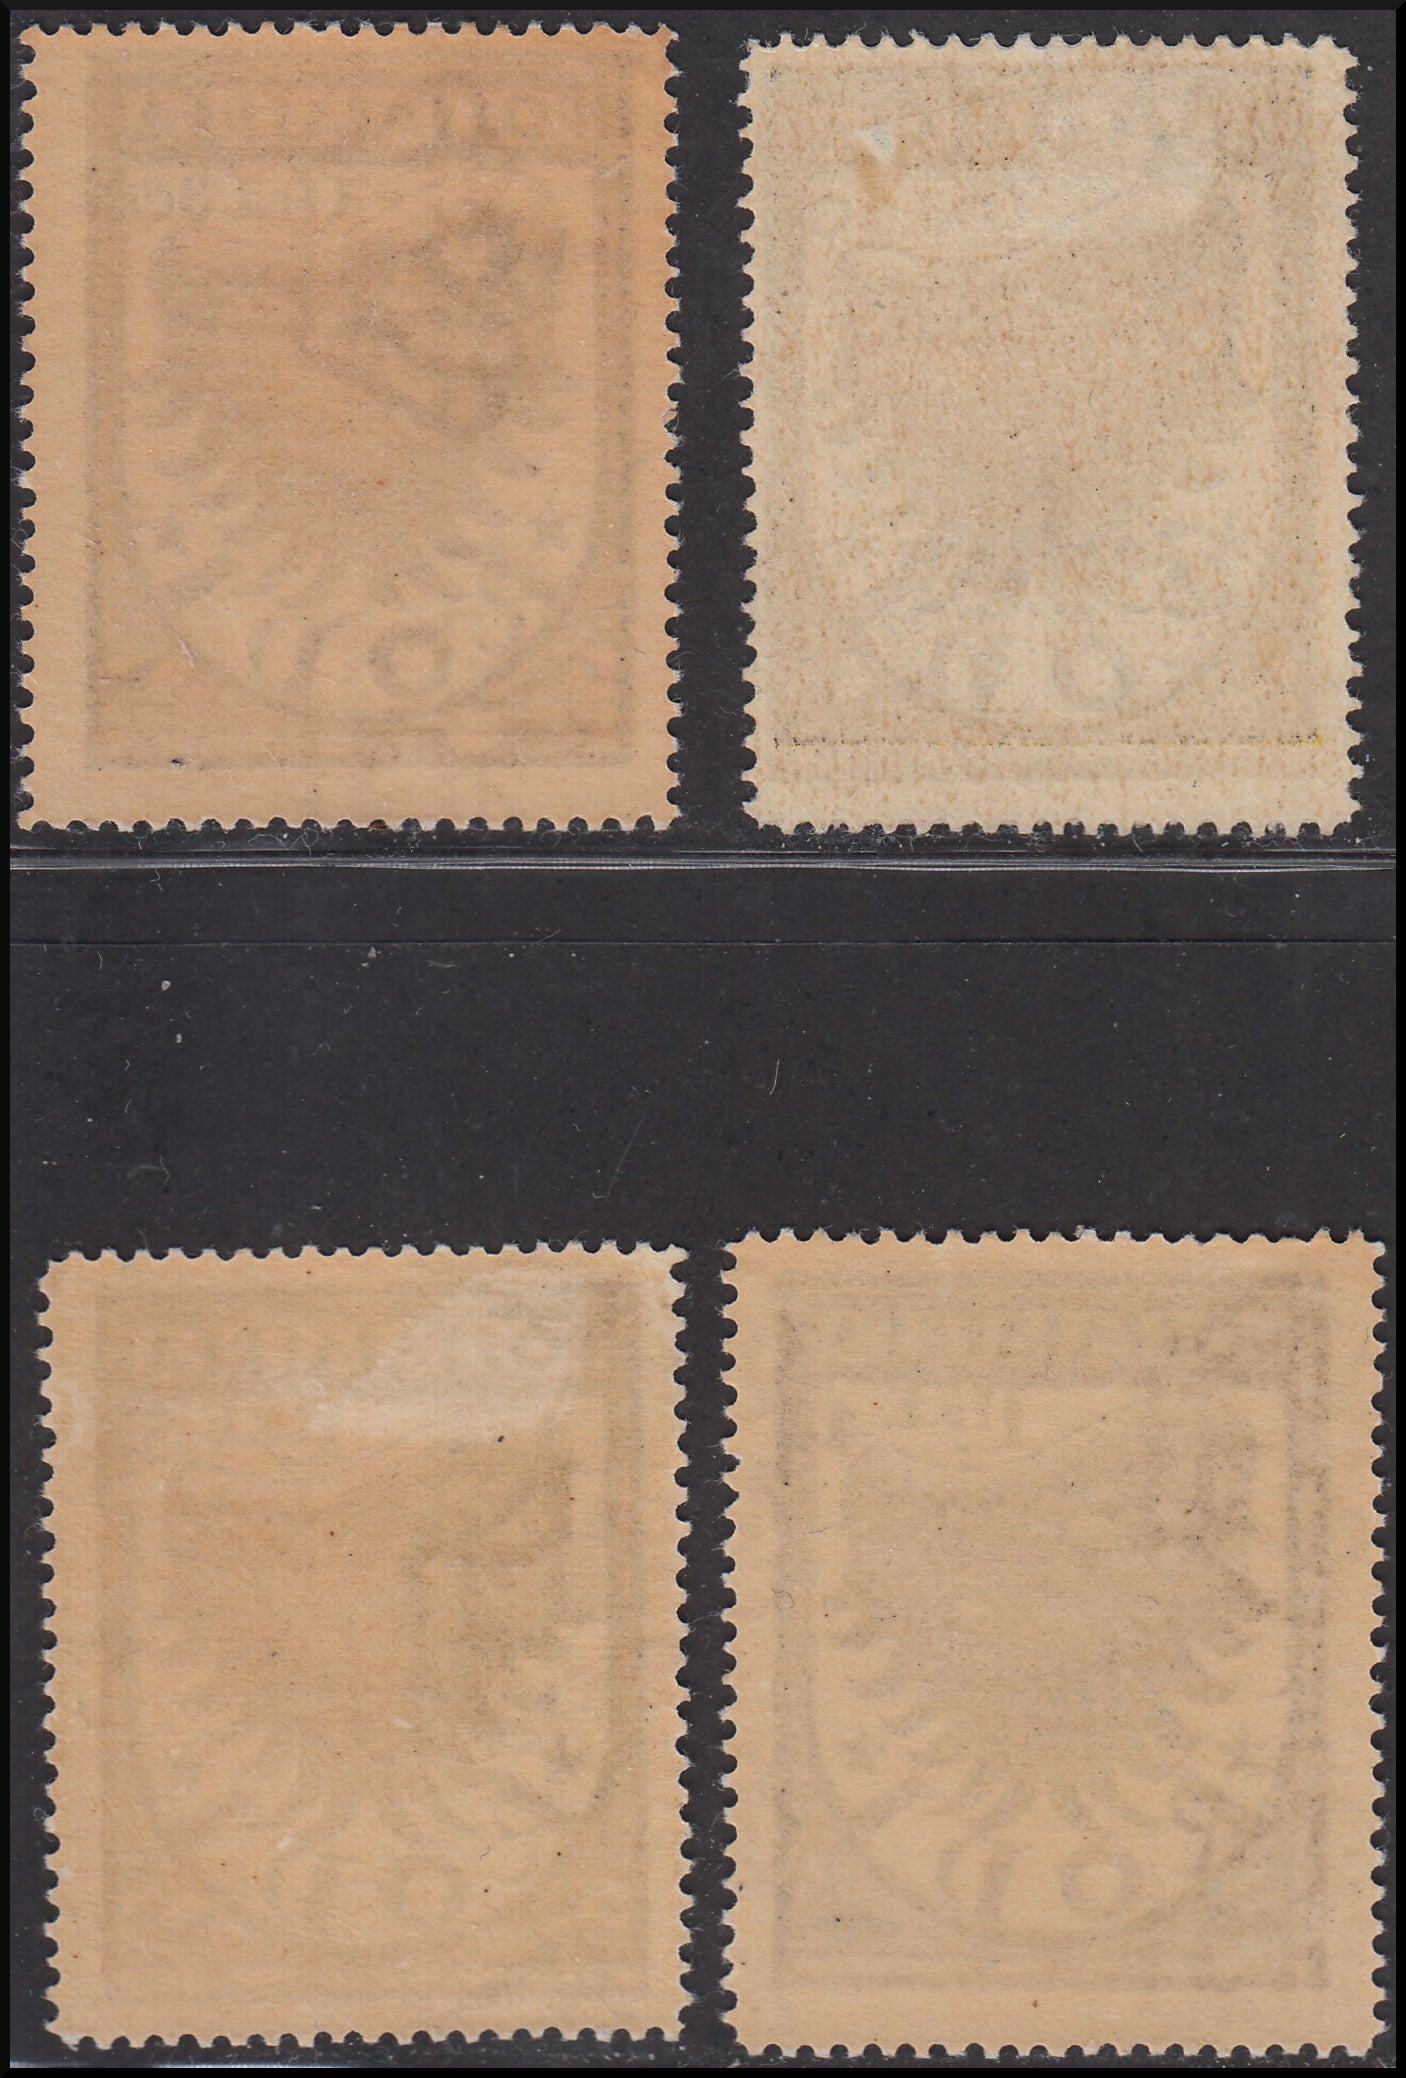 Colonias italianas, Egeo, emisiones generales, ala estilizada, serie completa de 4 sellos, 1ª edición* (30/33) 